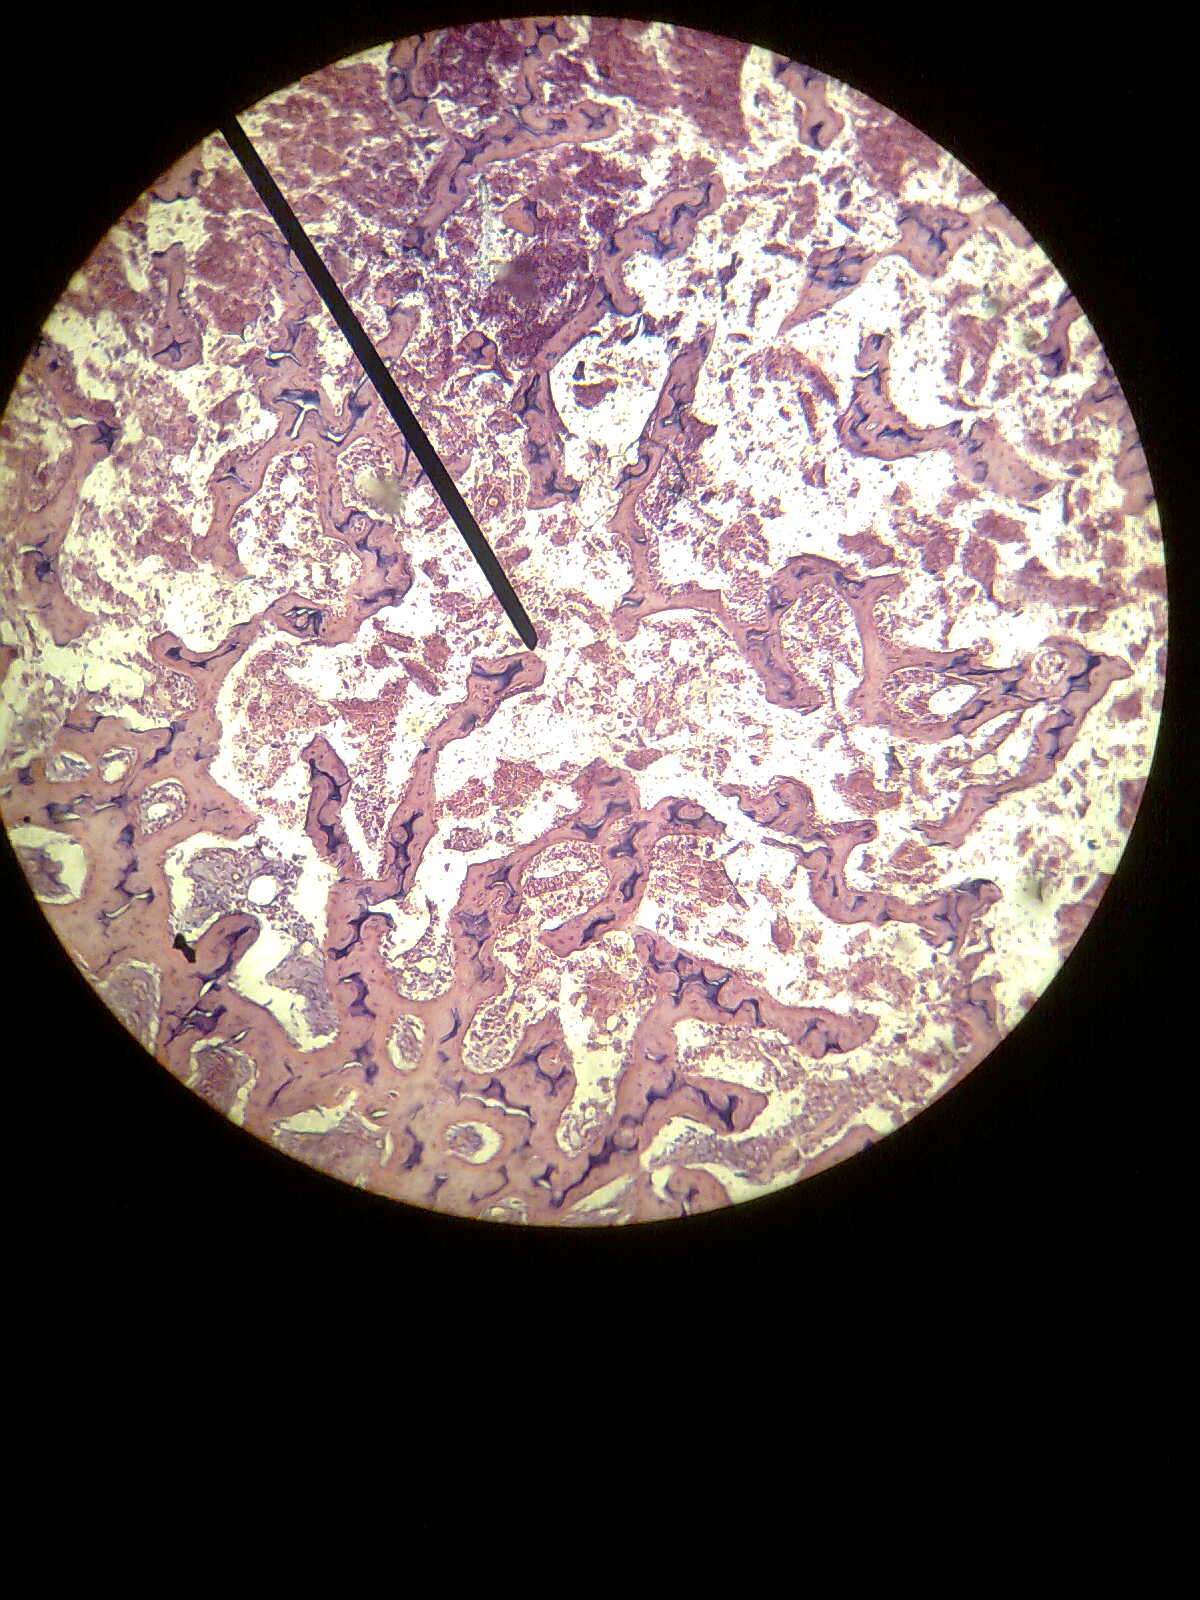 Je suis 'alia aqilah, et vous? =): Histology Slide - Microscope under